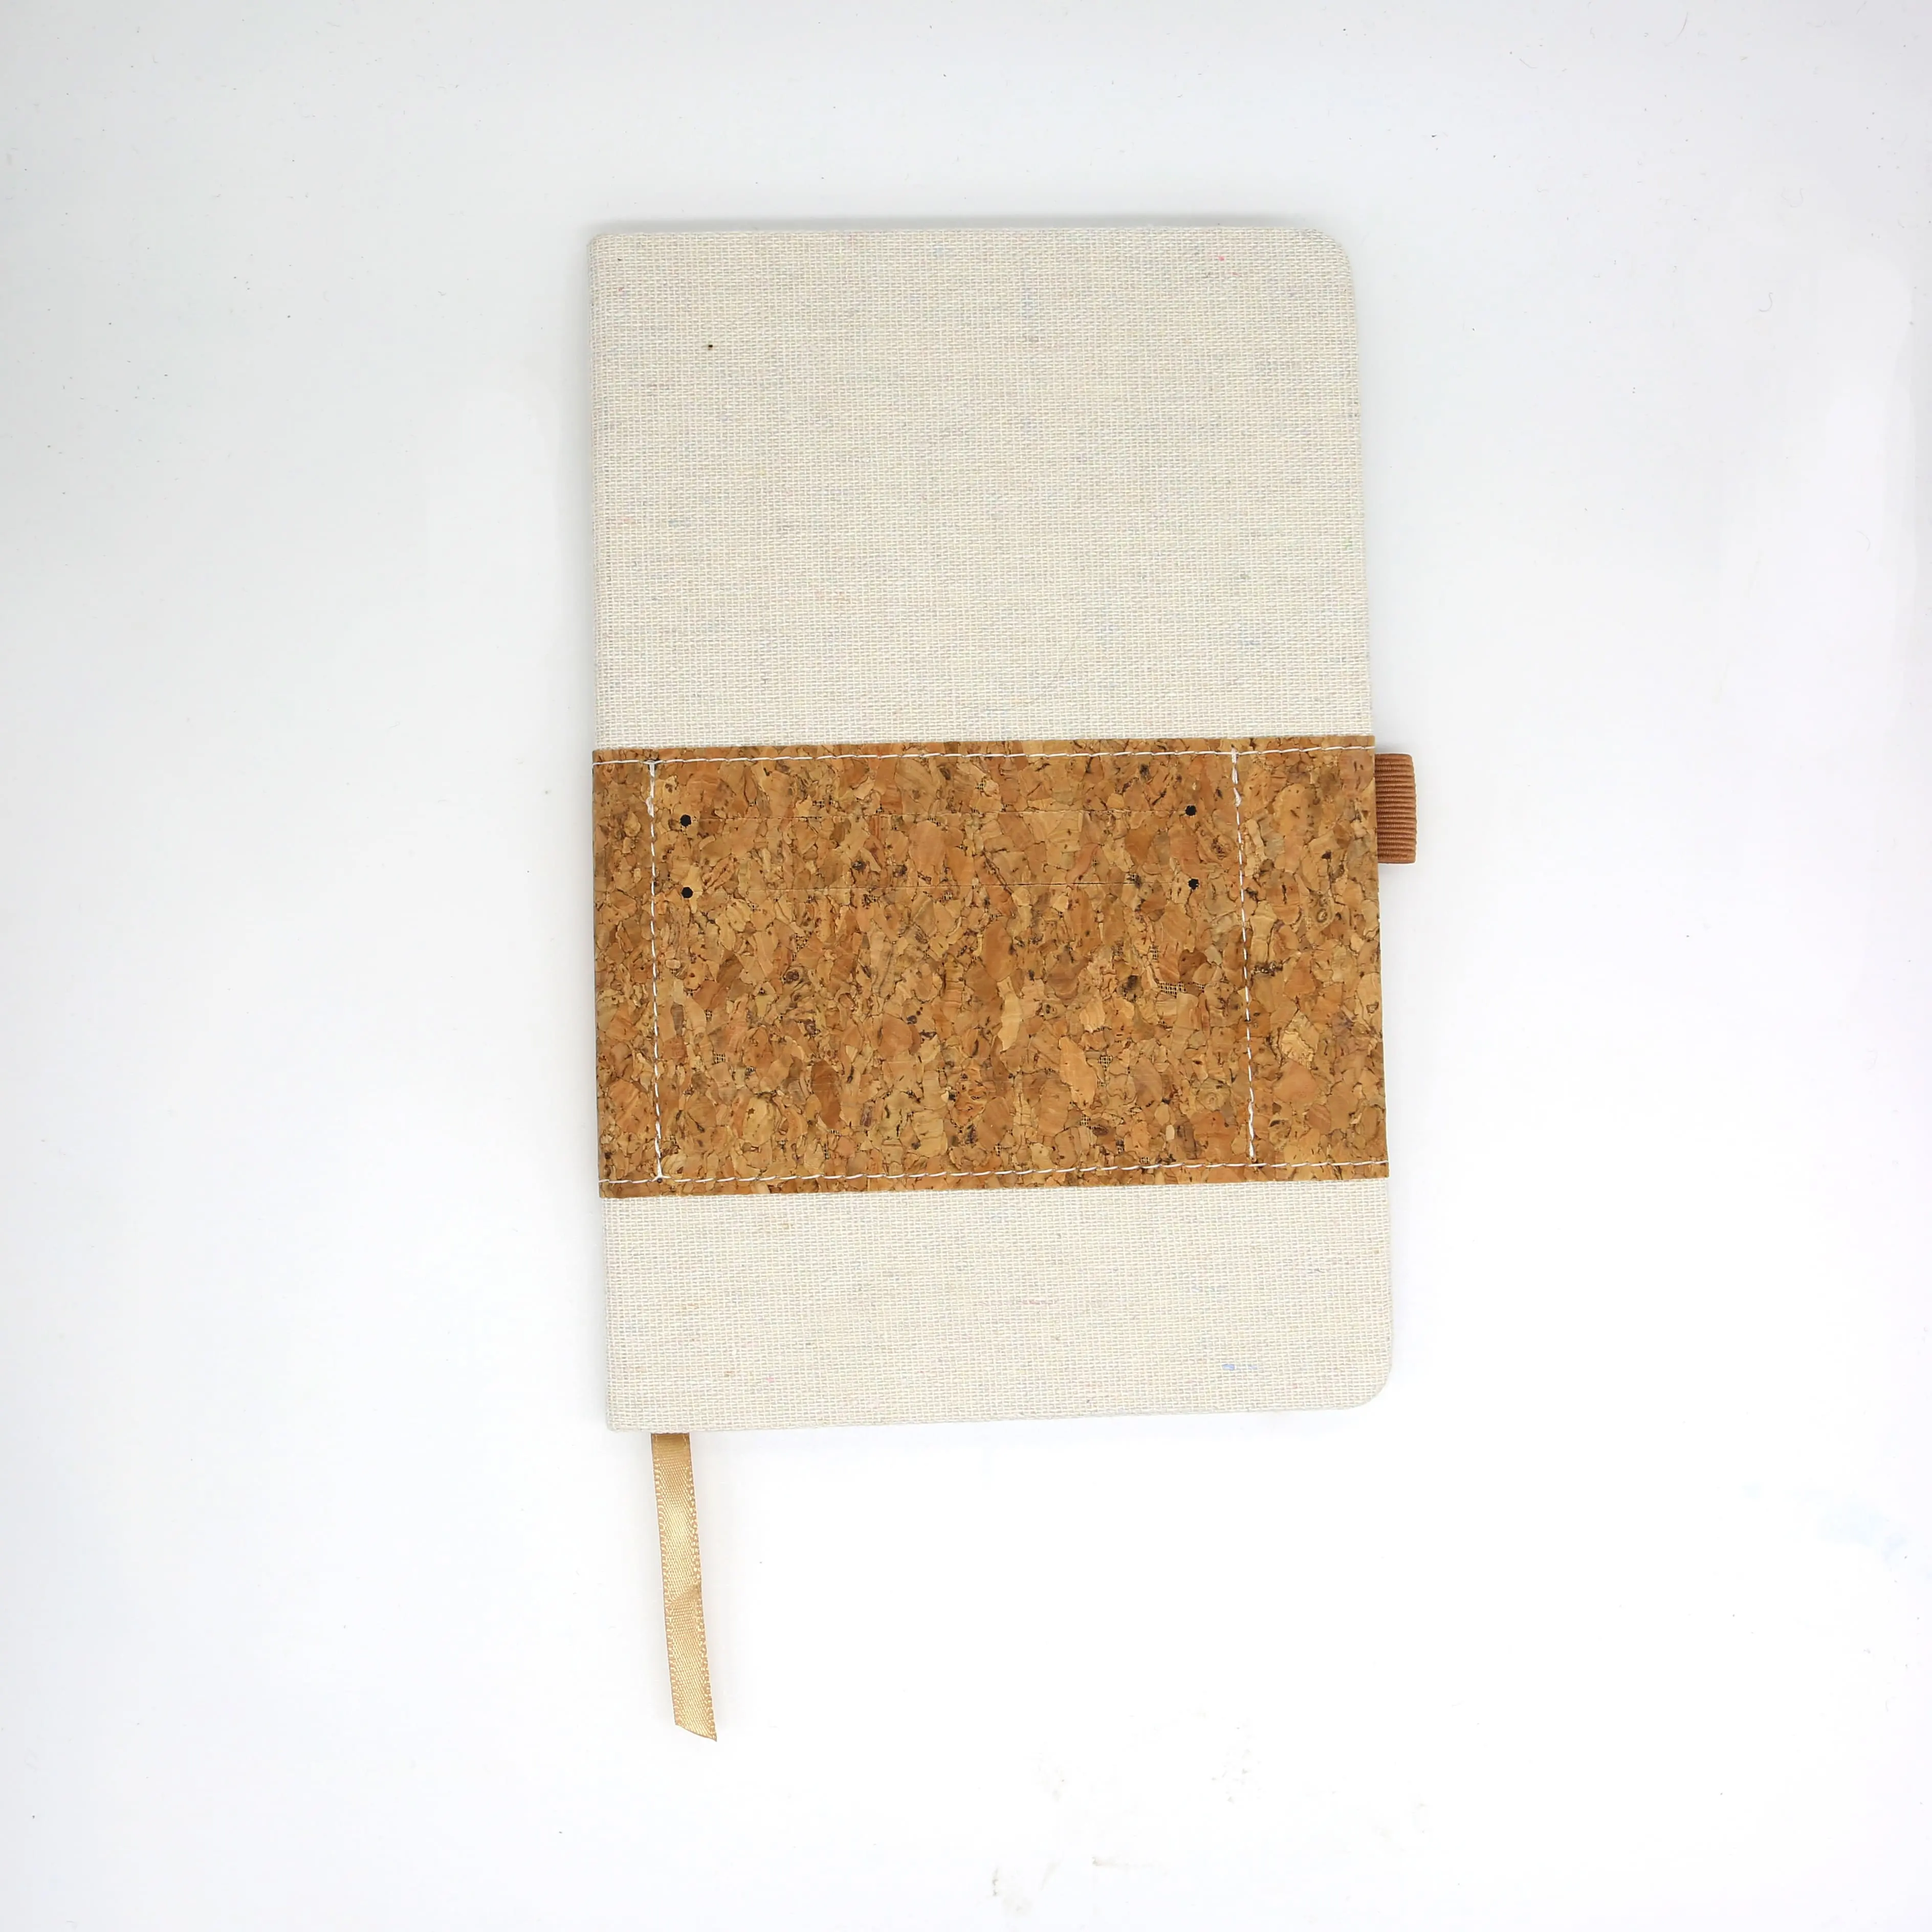 Cortiça de papel de cortiça elástica natural do vegan, personalizada, eco-friendly, sem ácido, para diário, caderno, tampa dura